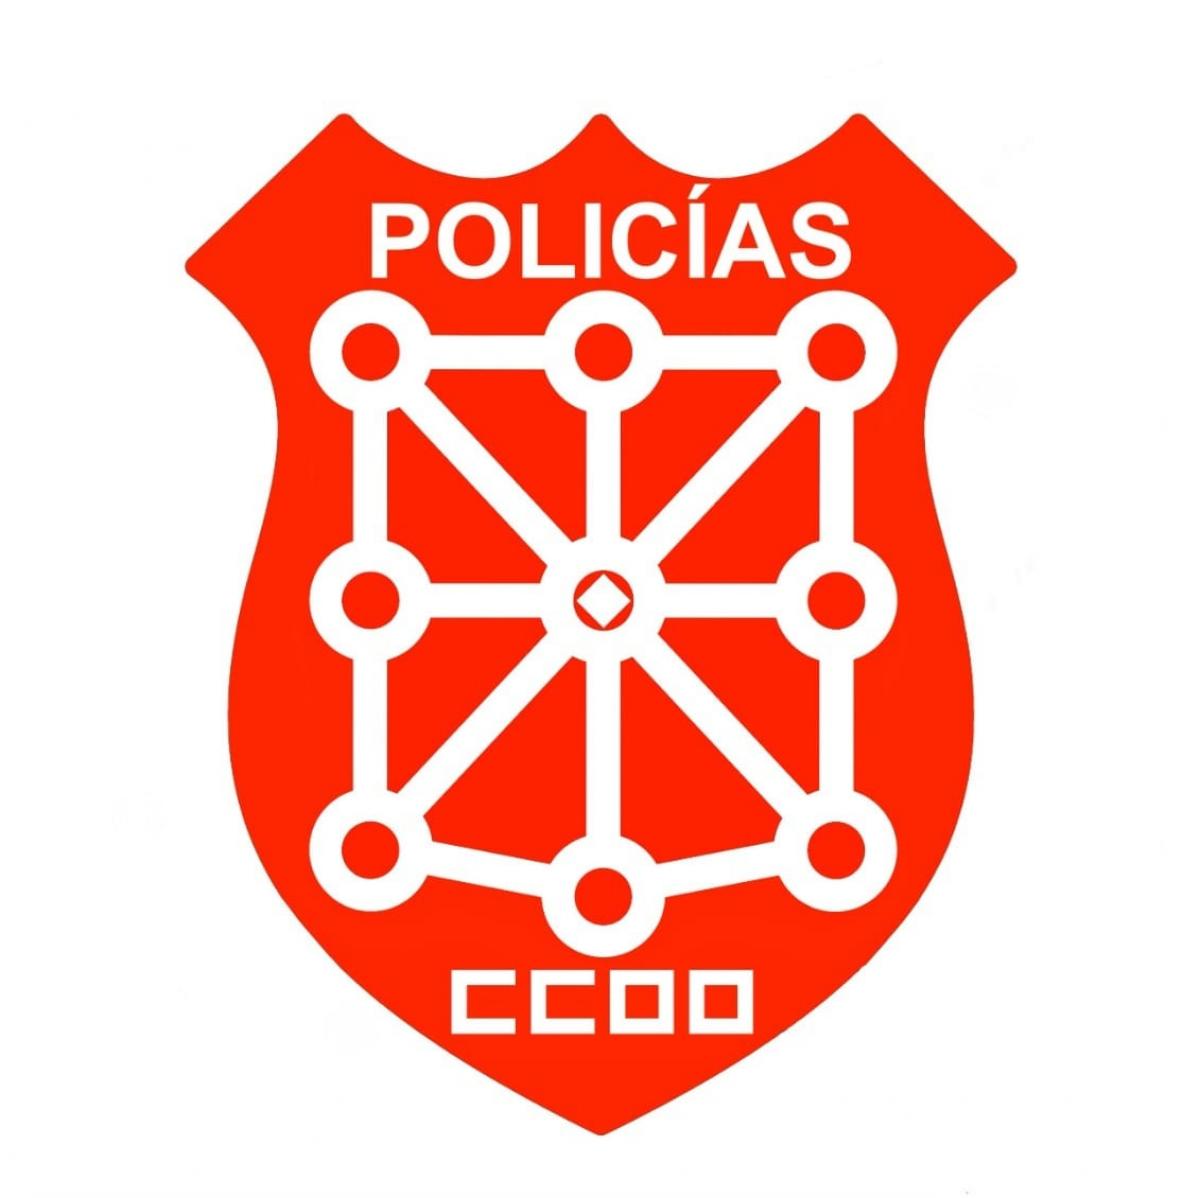 LOGO CCOO POLICA FORAL